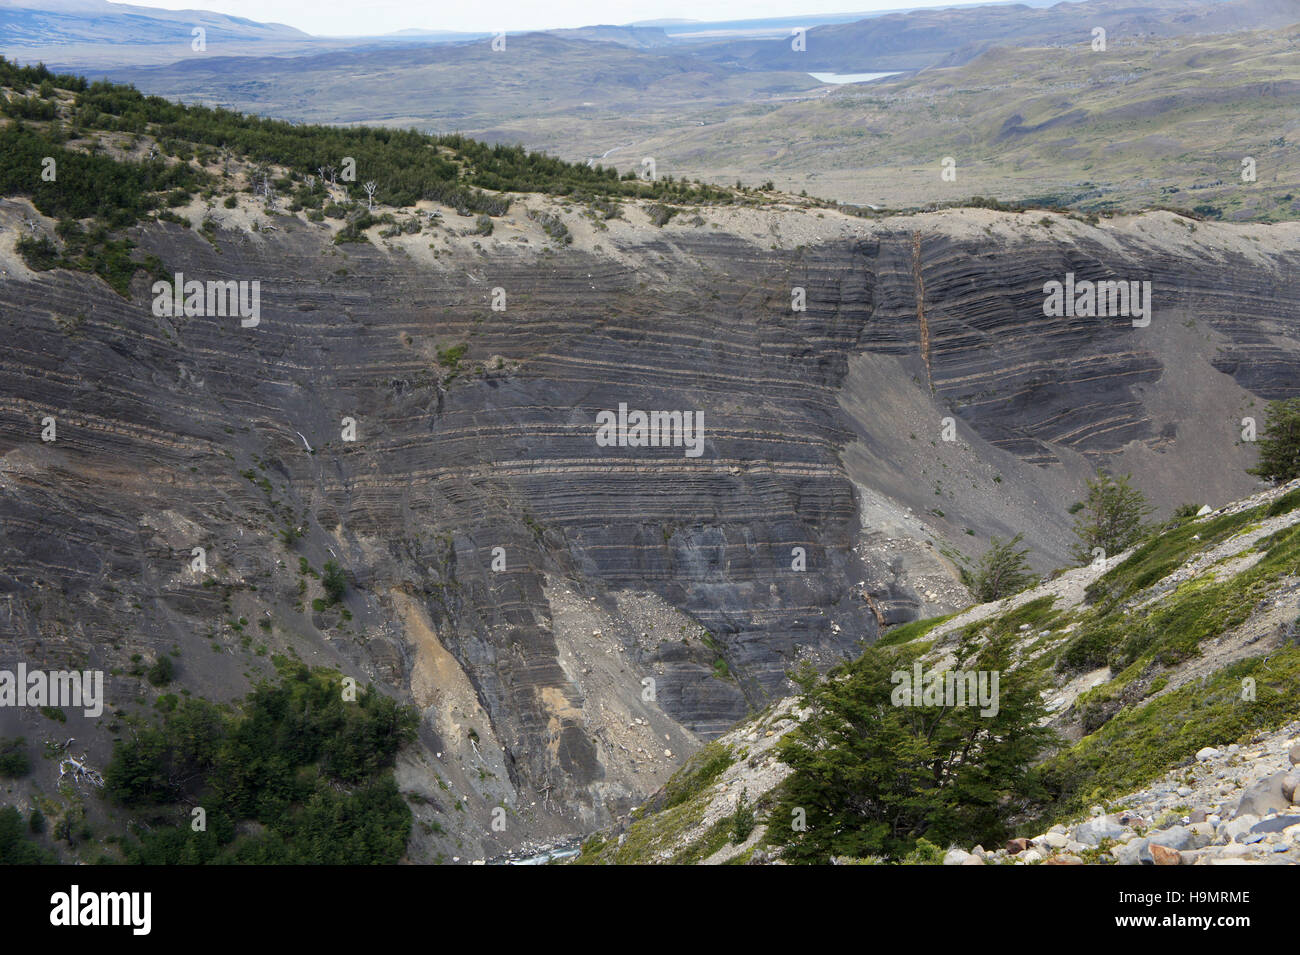 La géologie des couches de roches sur la paroi du canyon sur la queue à Torres del Paine, Patagonie, Chili Banque D'Images